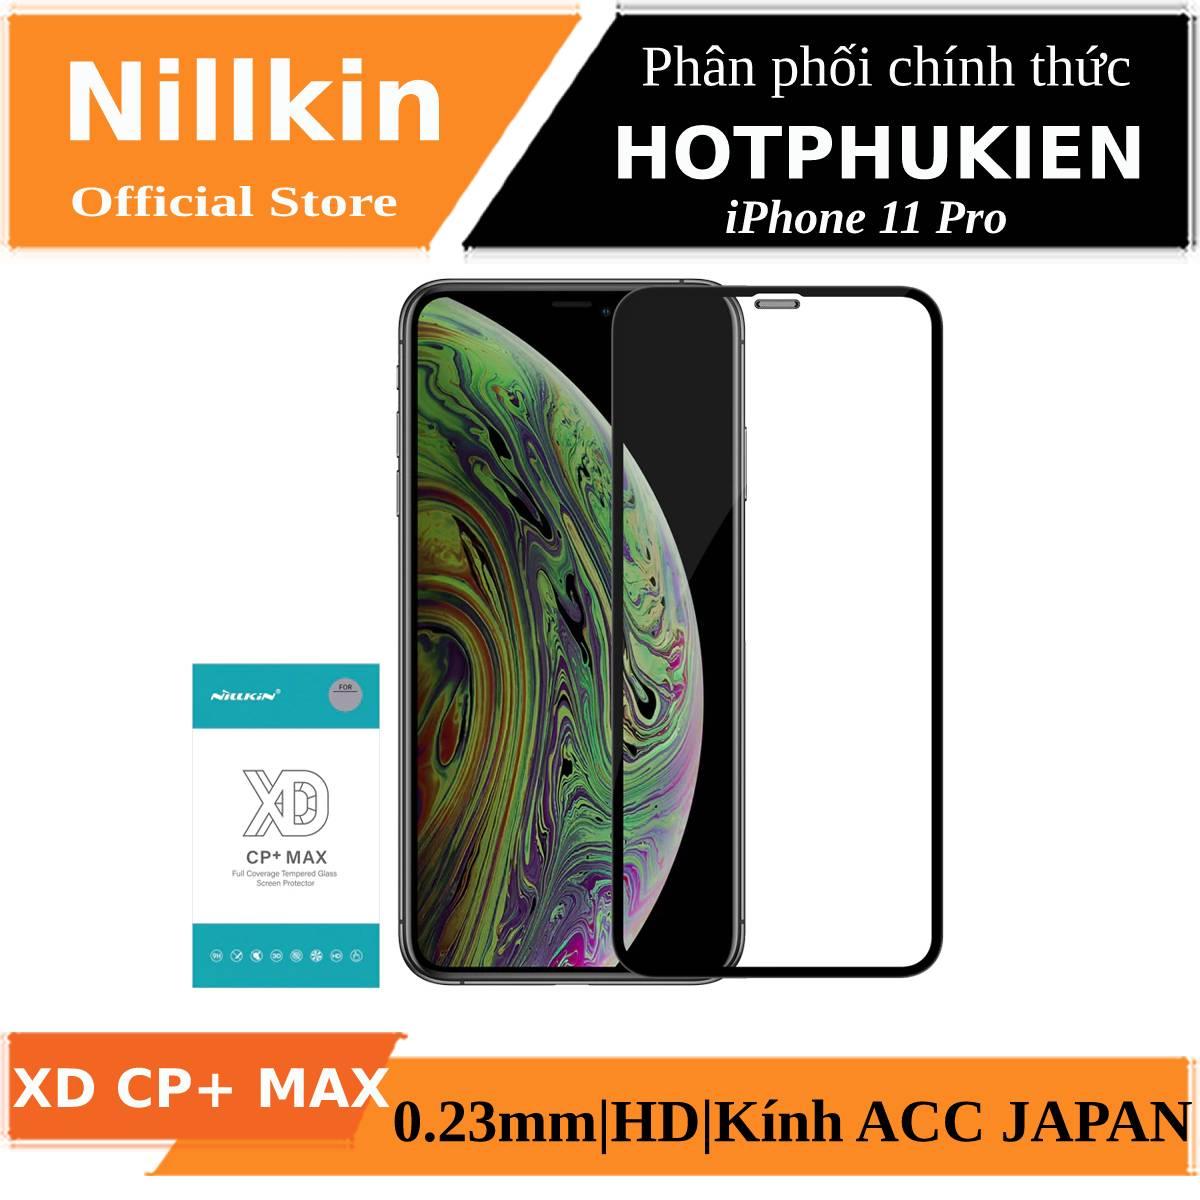 Miếng dán kính cường lực full 3D cho iPhone 11 Pro hiệu Nillkin XD CP+ Max